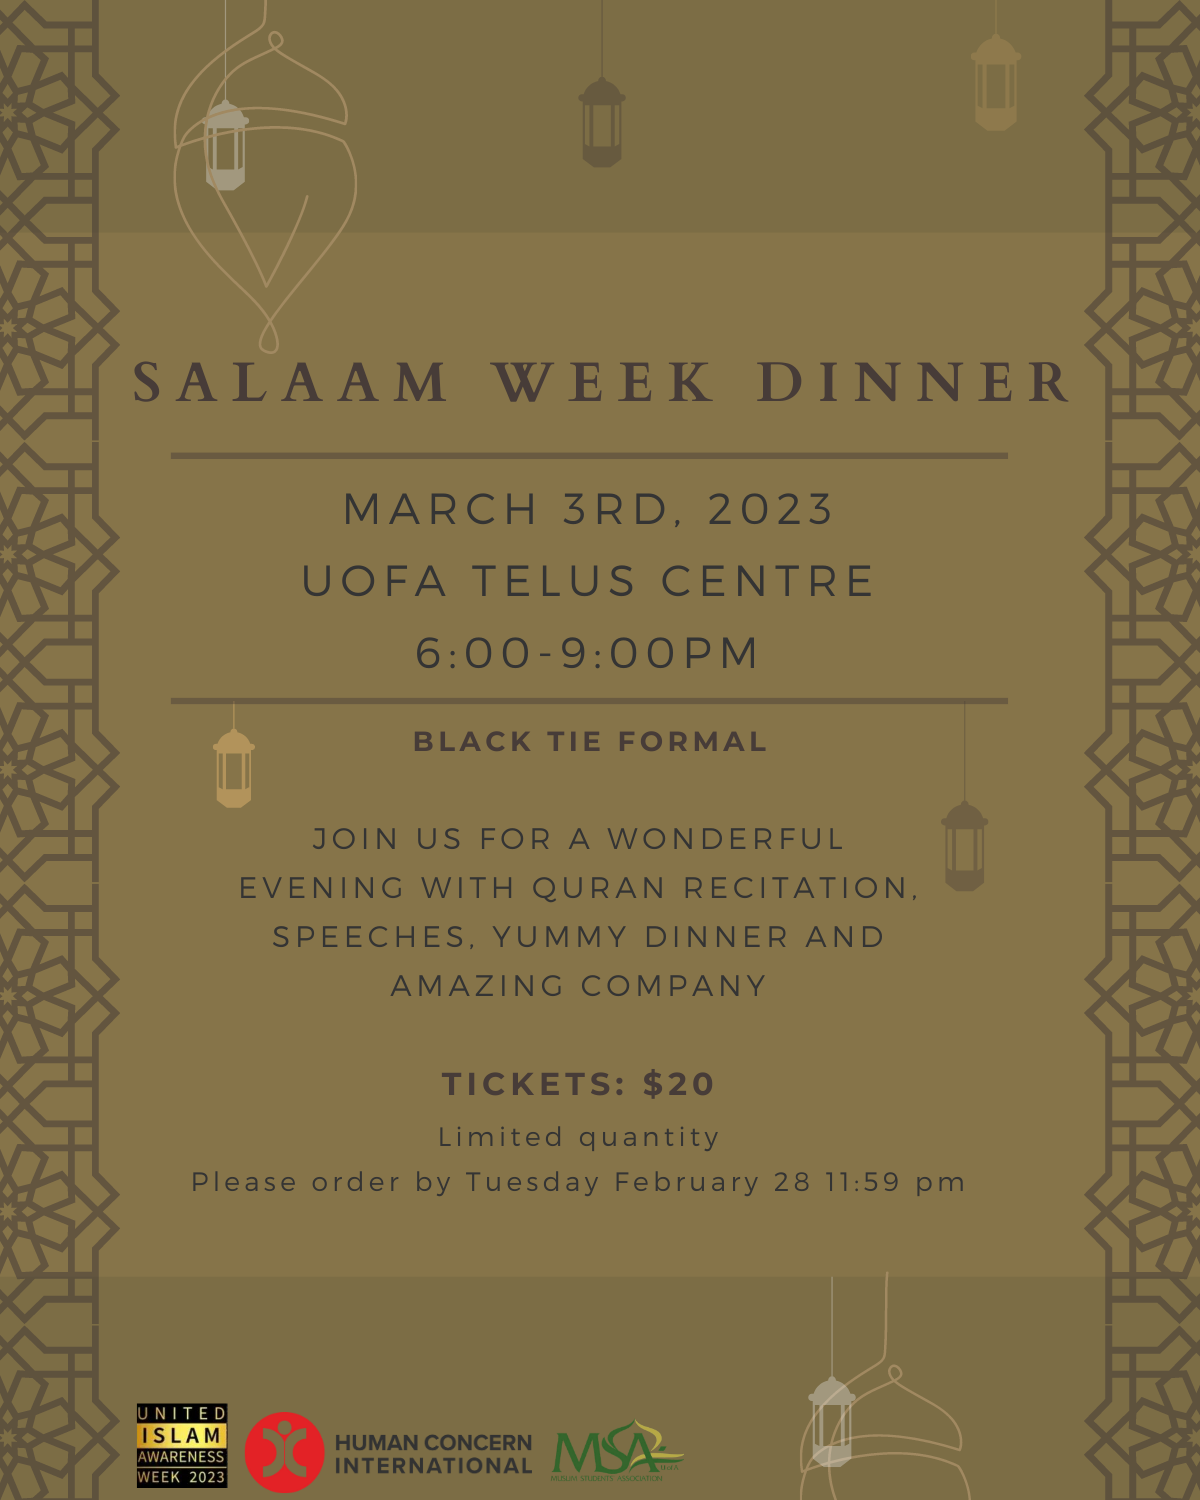 Salaam week 2023 dinner